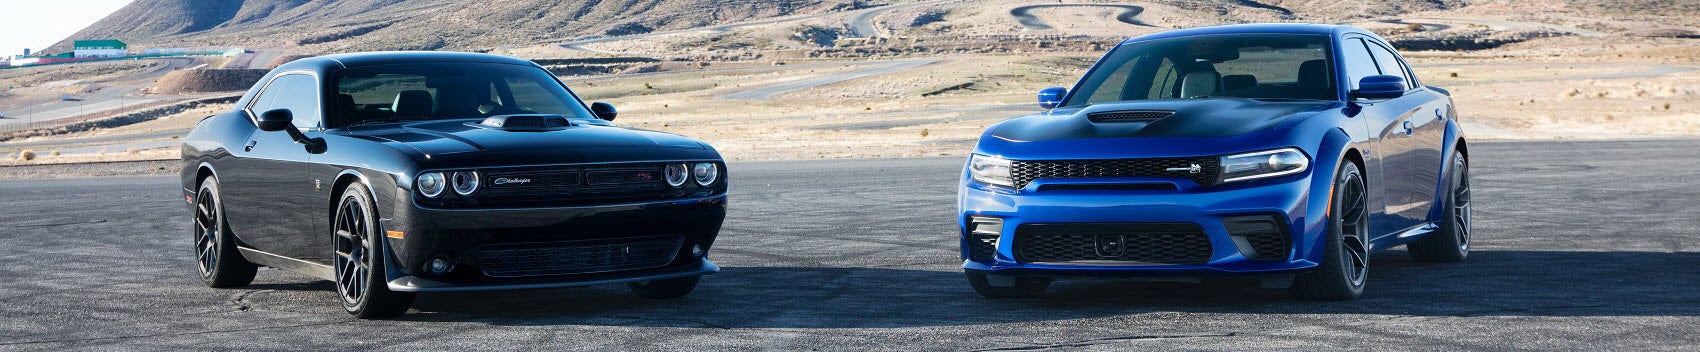 Dodge Challenger vs Dodge Charger